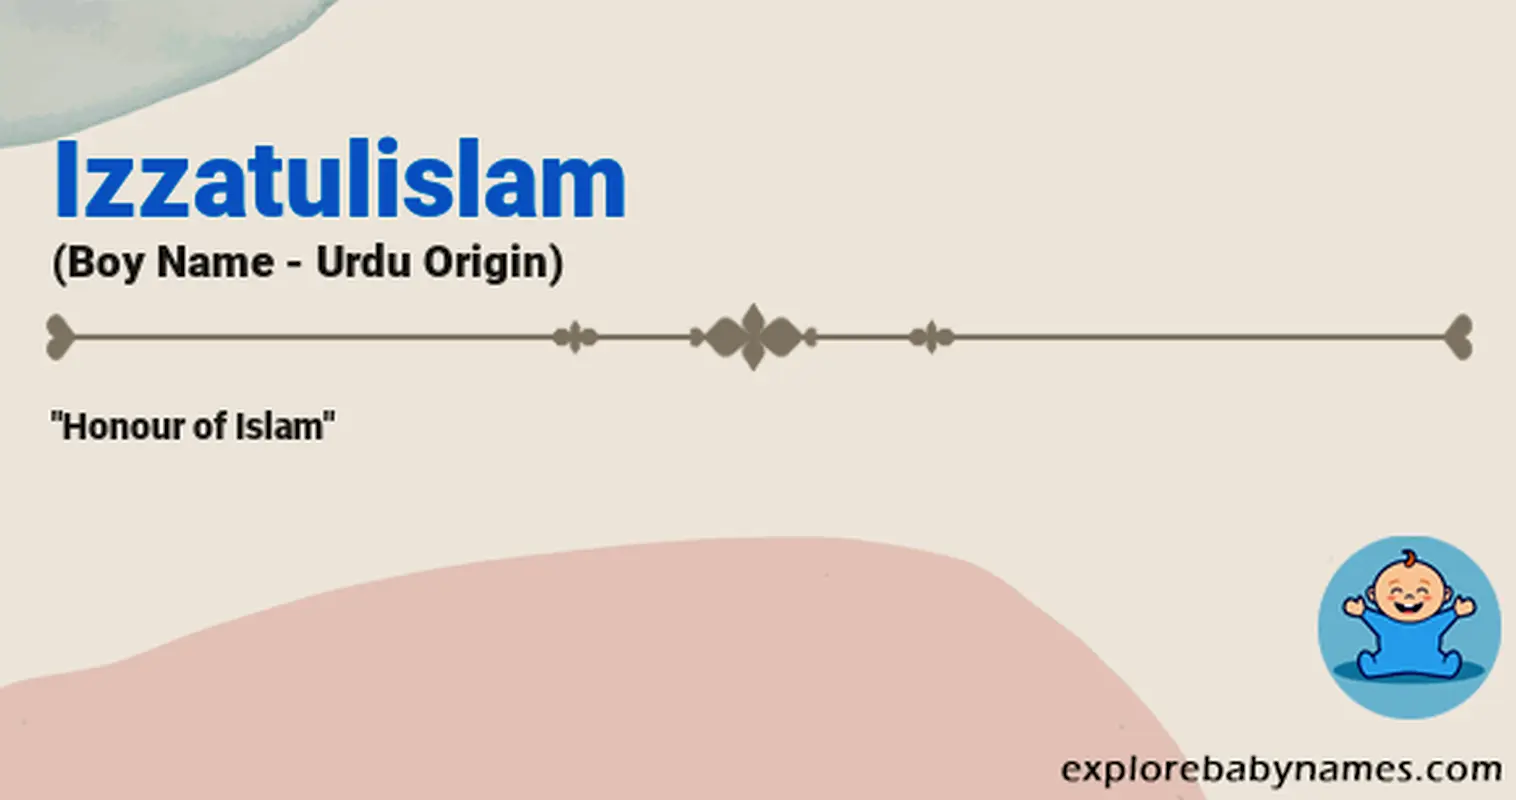 Meaning of Izzatulislam